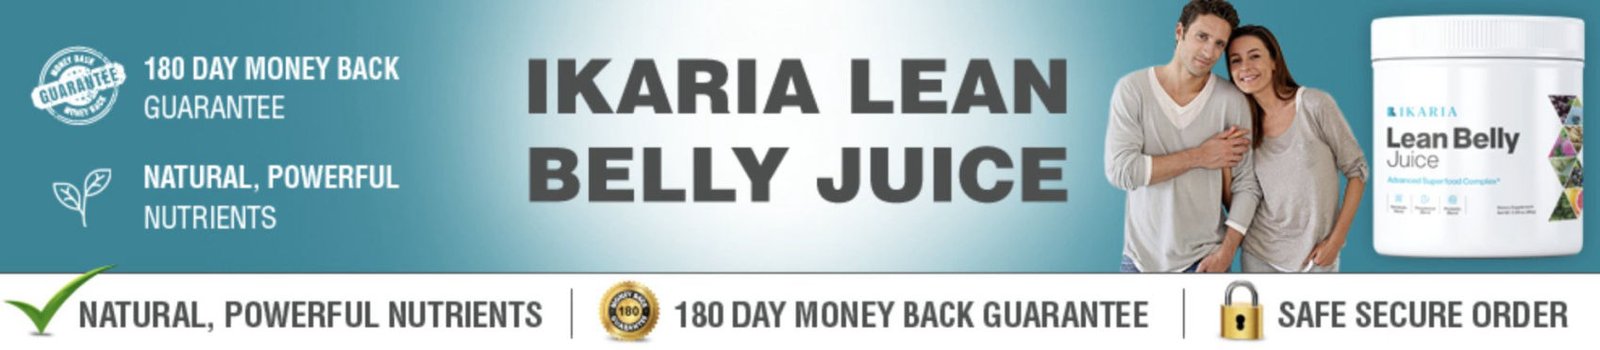 Ikaria Lean Belly Juice link